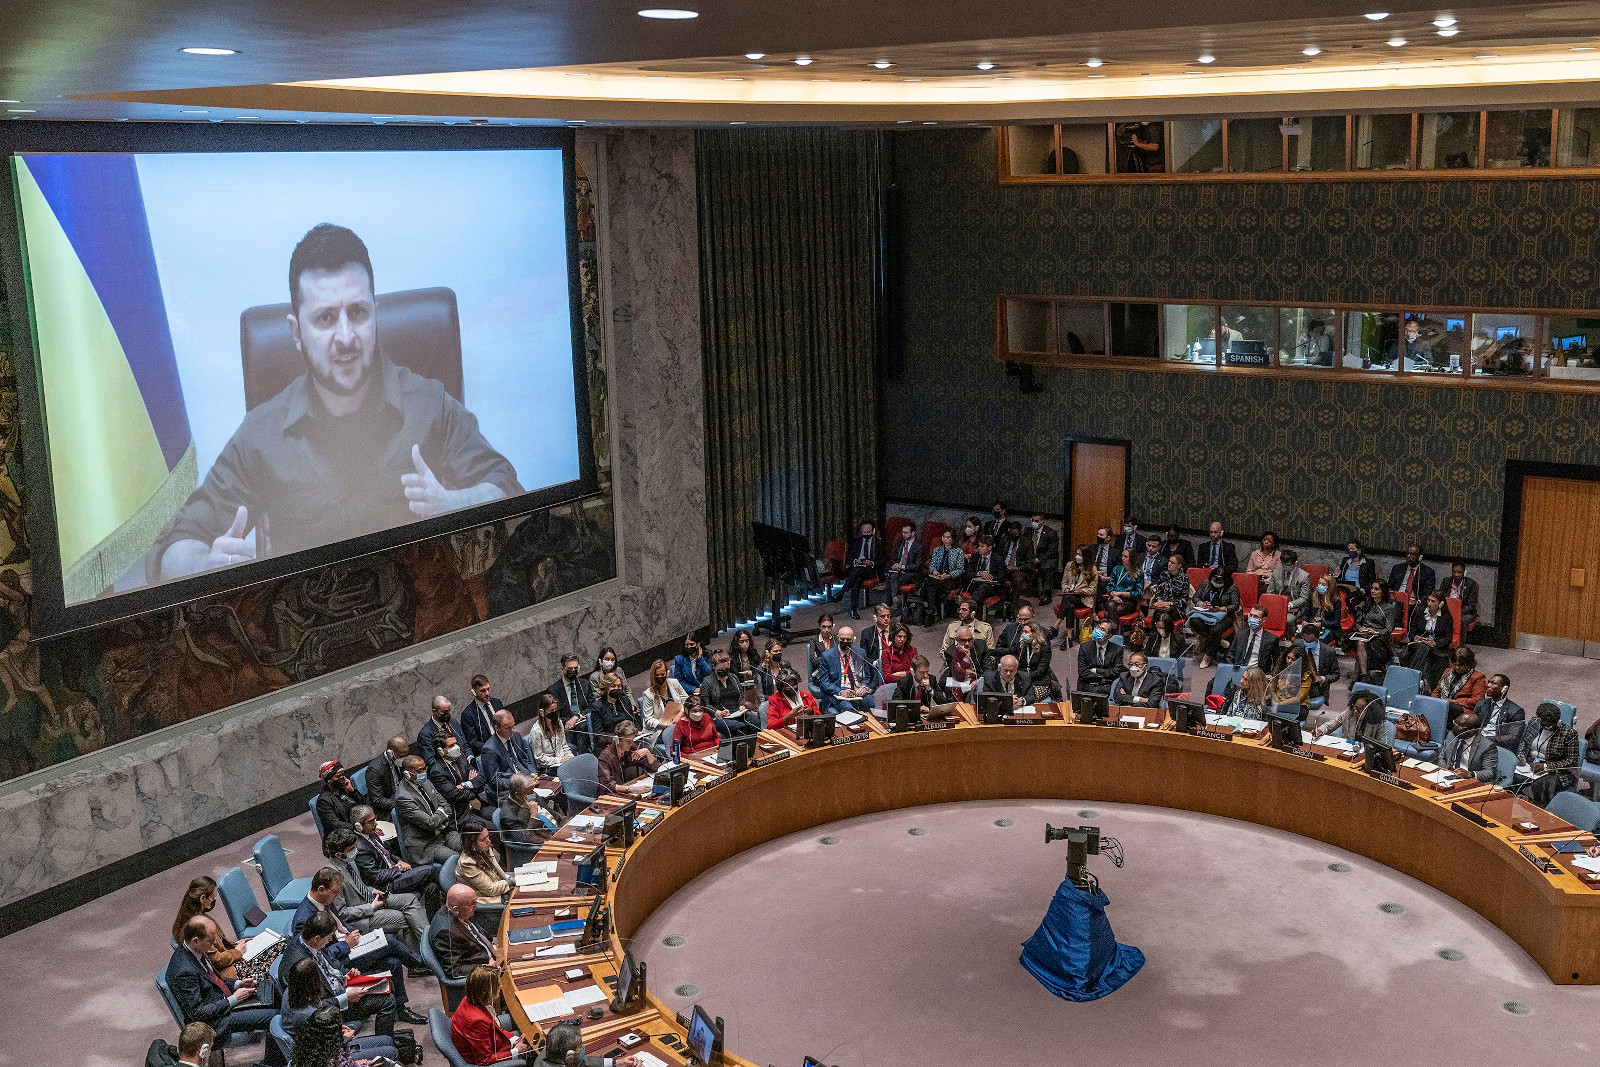 Sitzung des UN-Sicherheitsrates zur Erörterung von Kriegsverbrechen in der Ukraine am 5. April 2022. Zugeschaltet ist der ukrainische Präsident Volodymyr Zelensky.